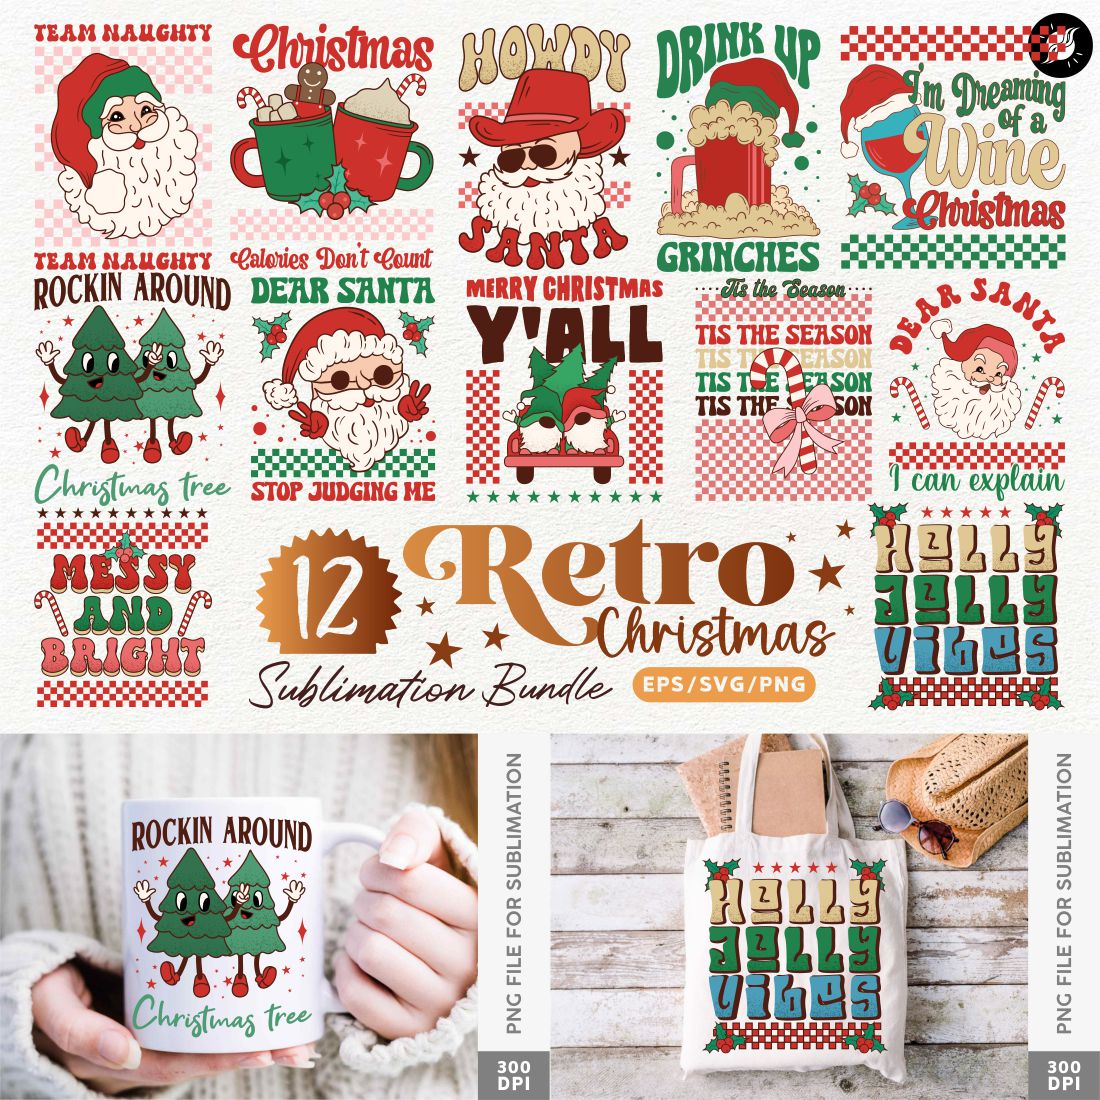 Retro Christmas Vintage T-shirt Designs Sublimation Bundle cover image.